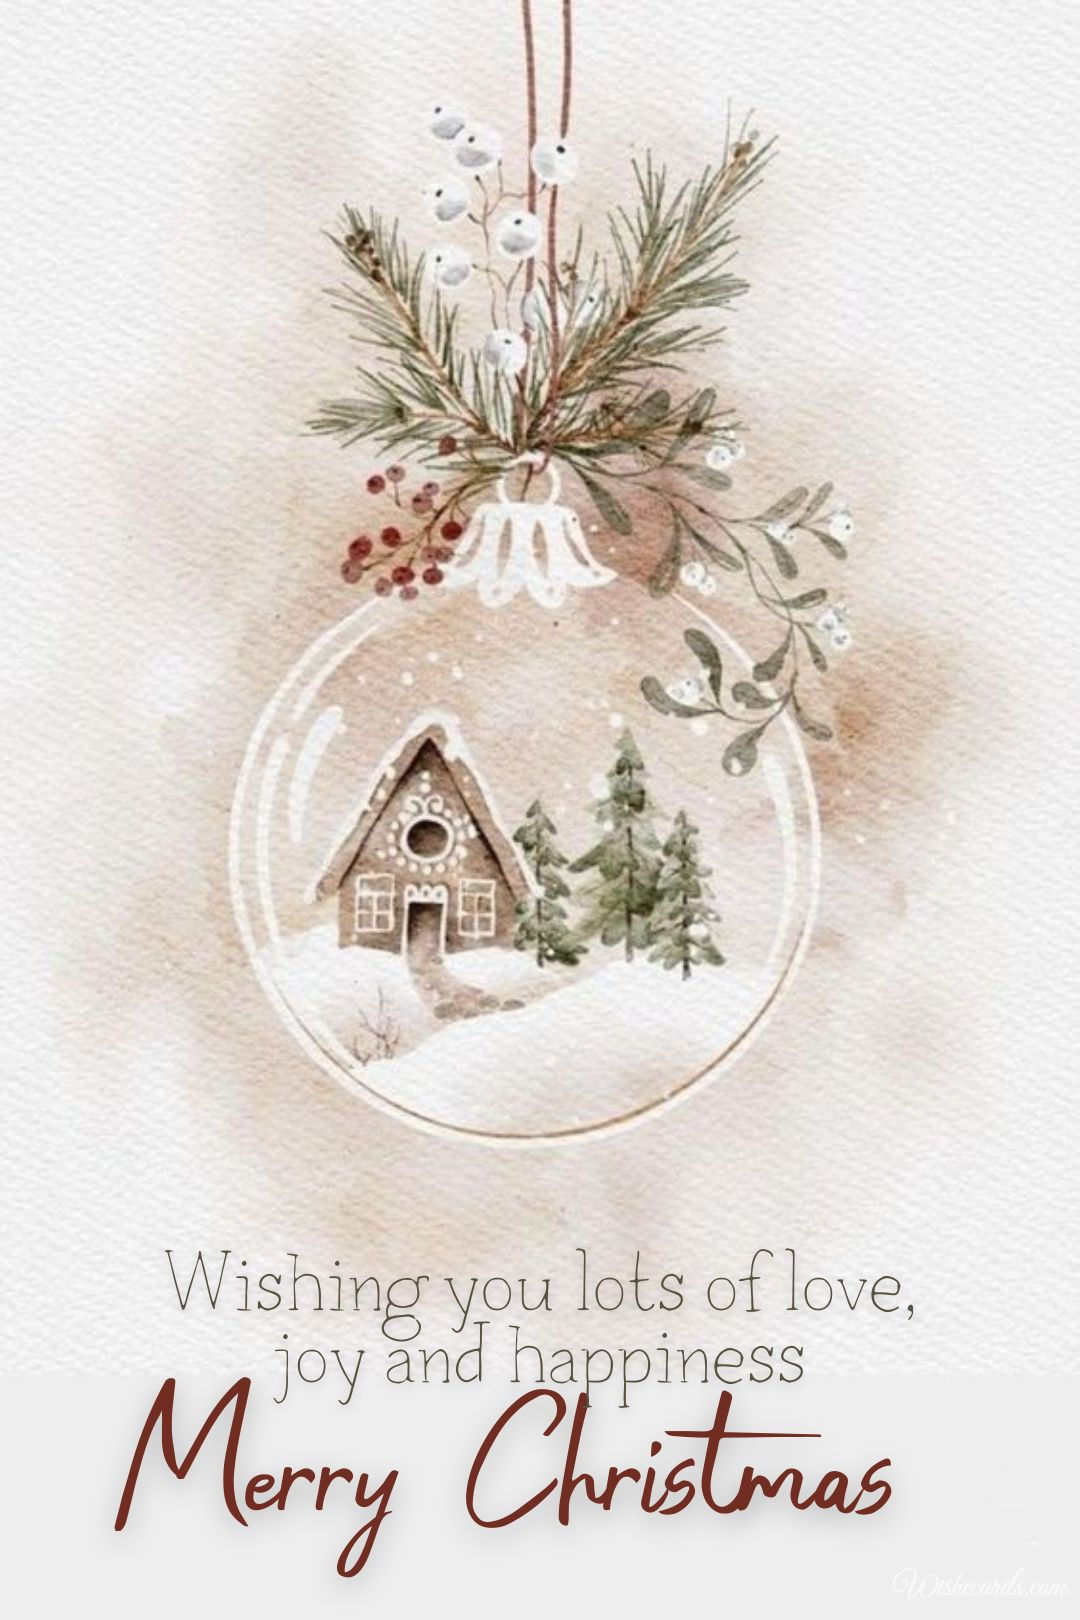 Christmas Image and Wish